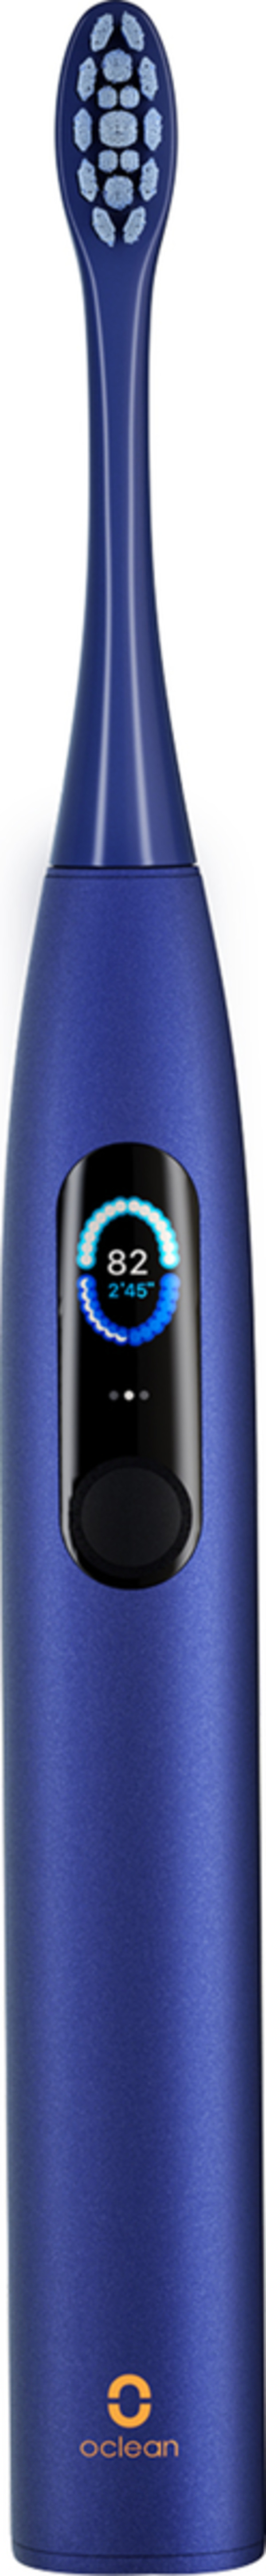 Bild 1 von Oclean X Pro Elektrische Zahnbürste blau